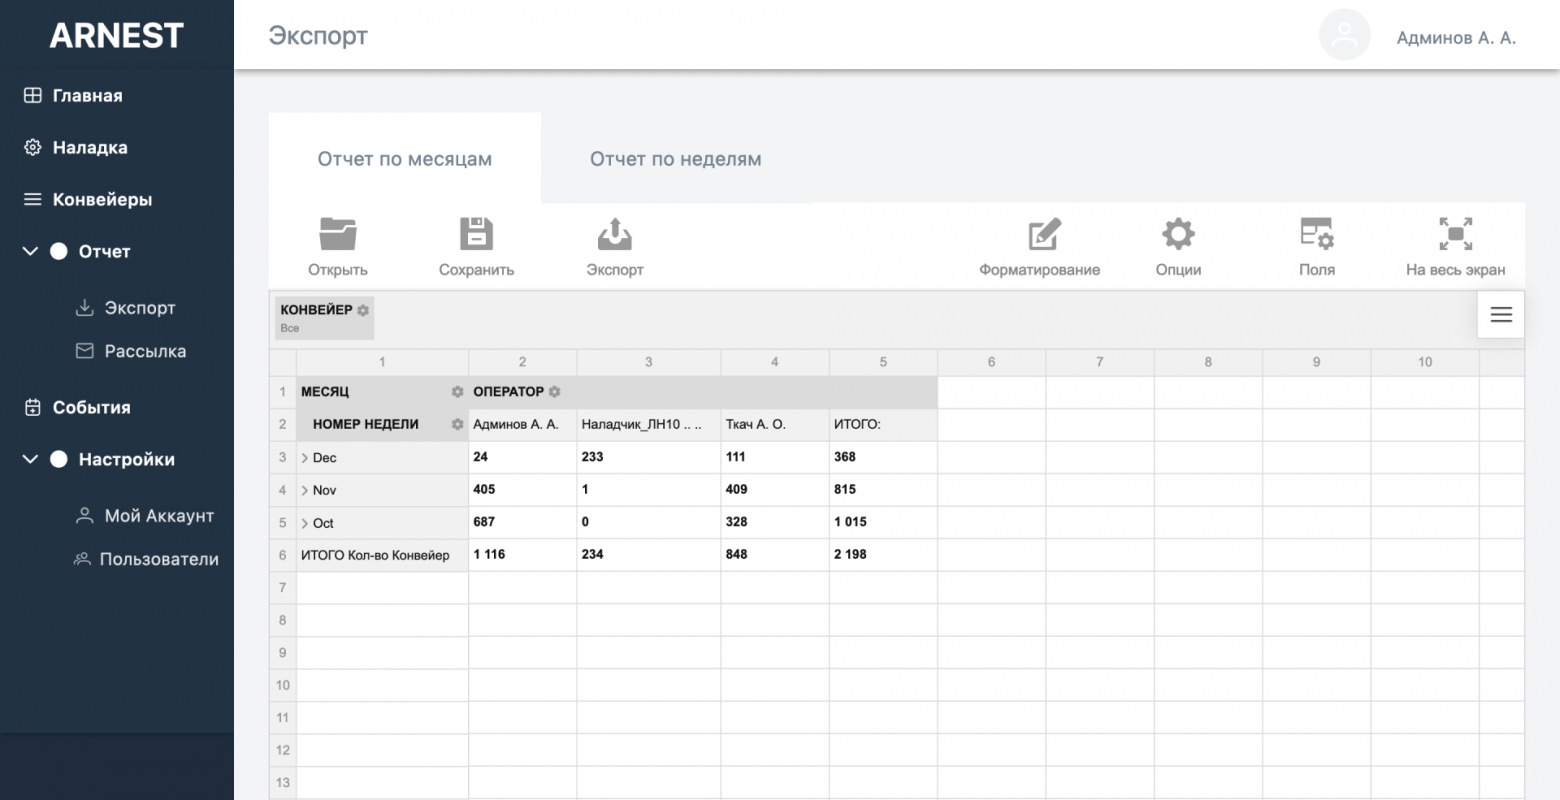 Функционал отчетов позволяет пользователю собрать таблицу в различных разрезах прямо в интерфейсе системы